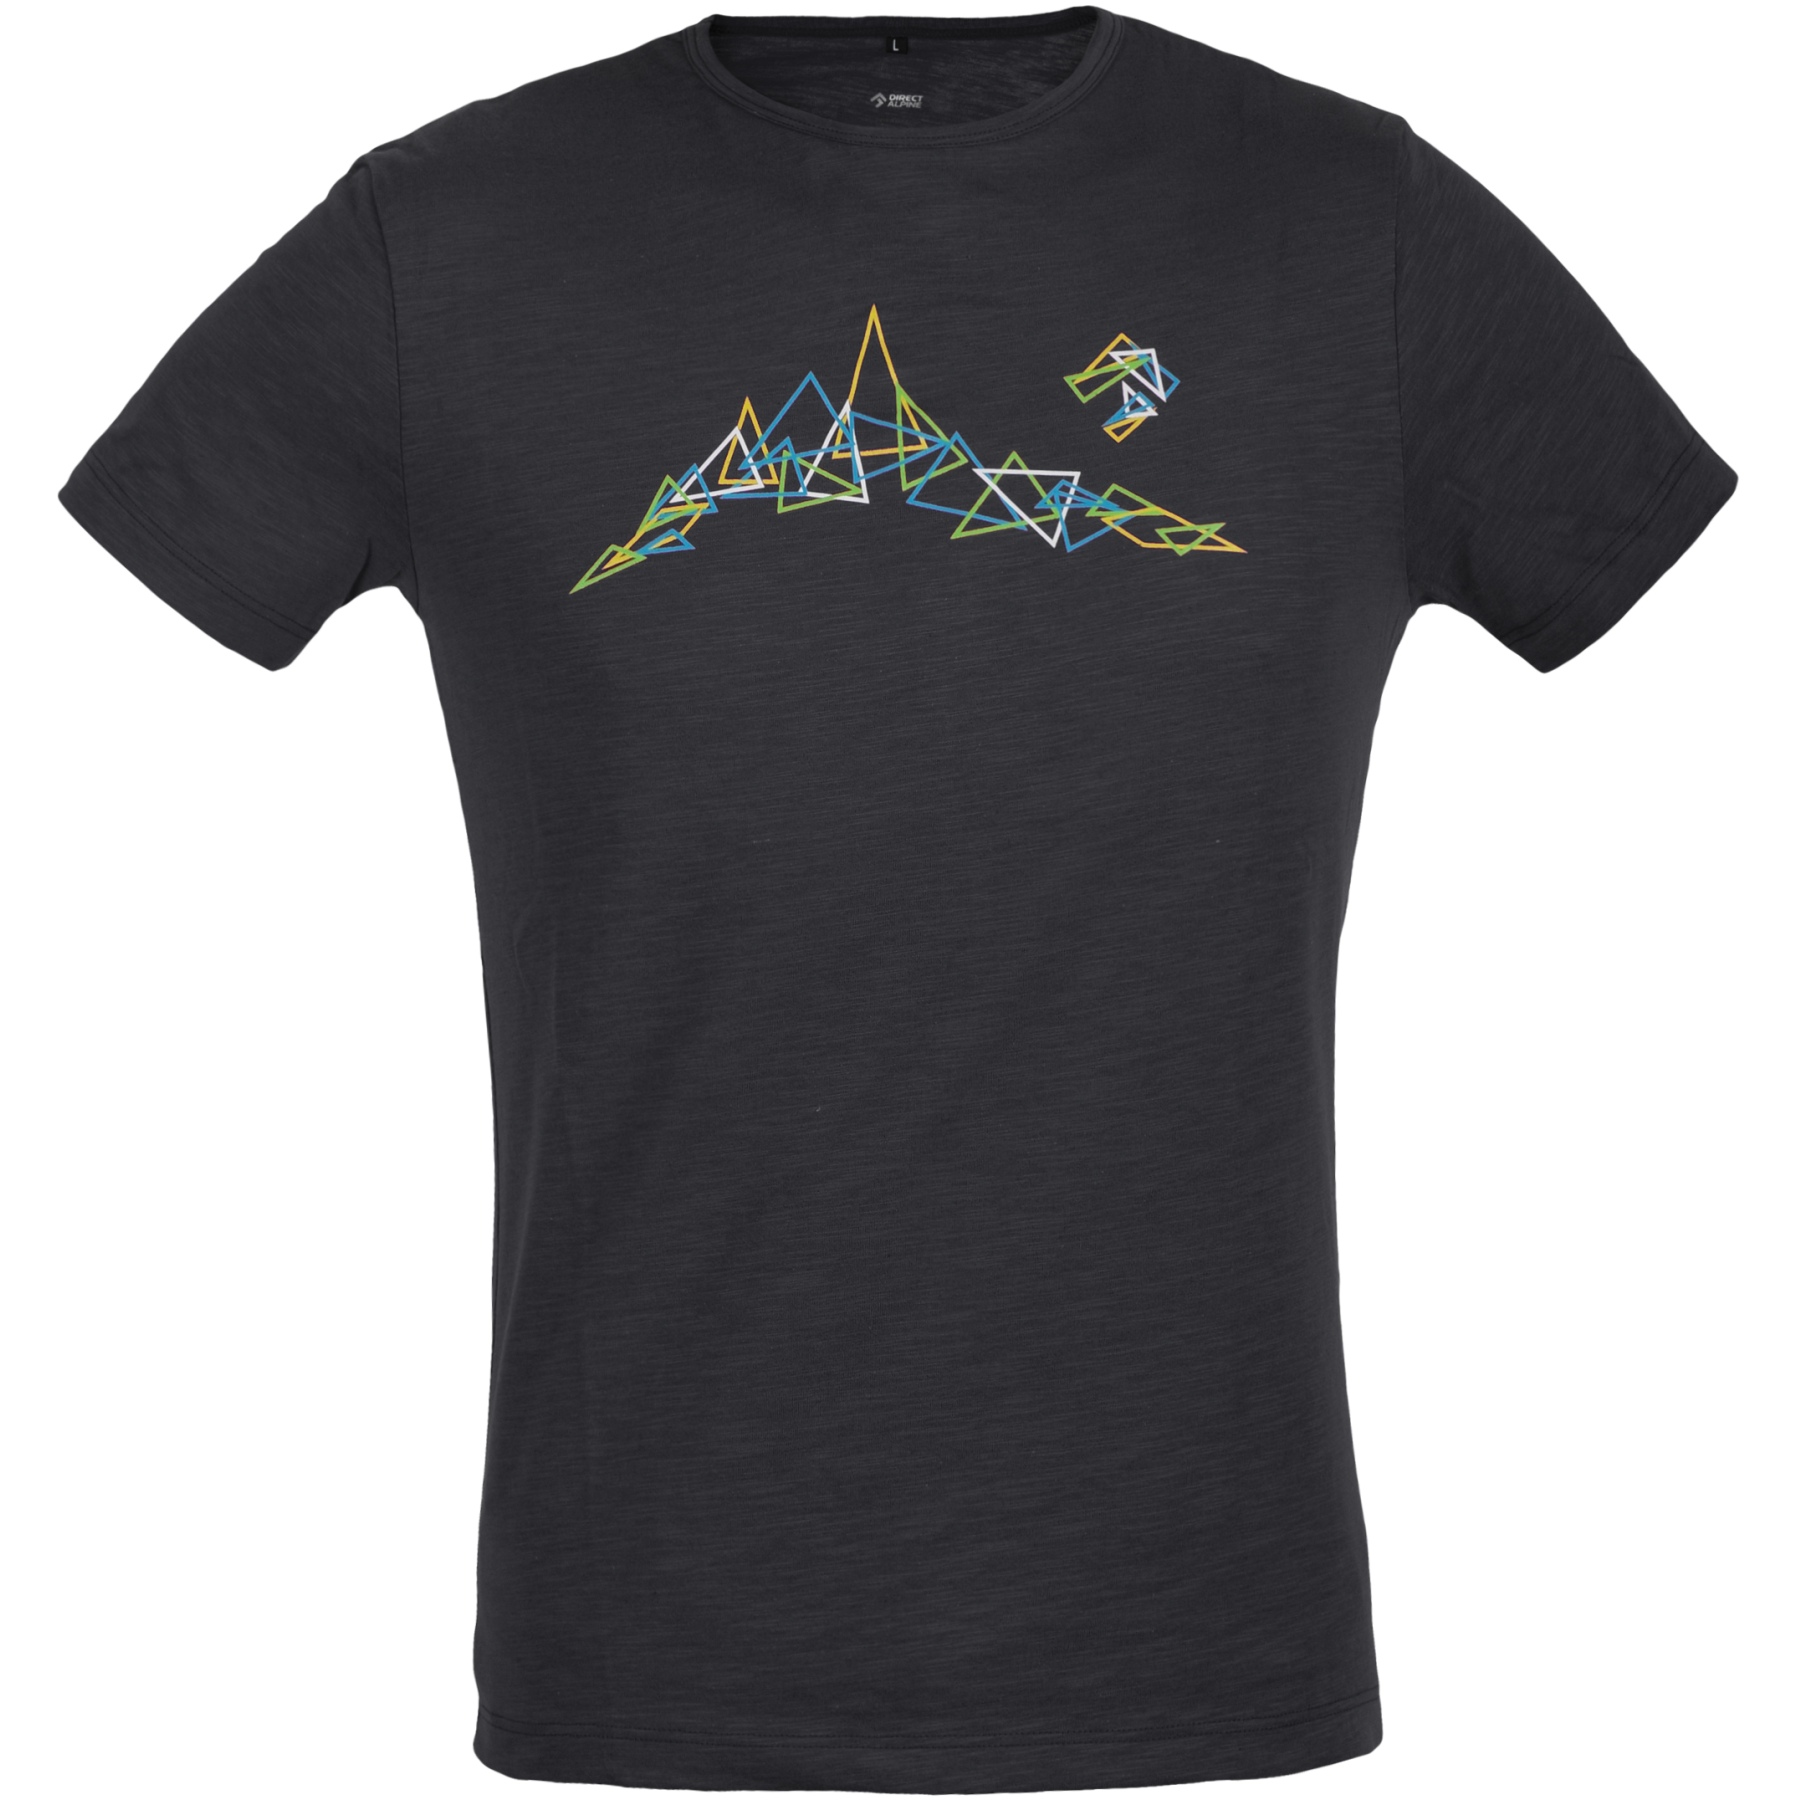 Produktbild von Directalpine Bosco Triangles T-Shirt - anthracite (triangles)